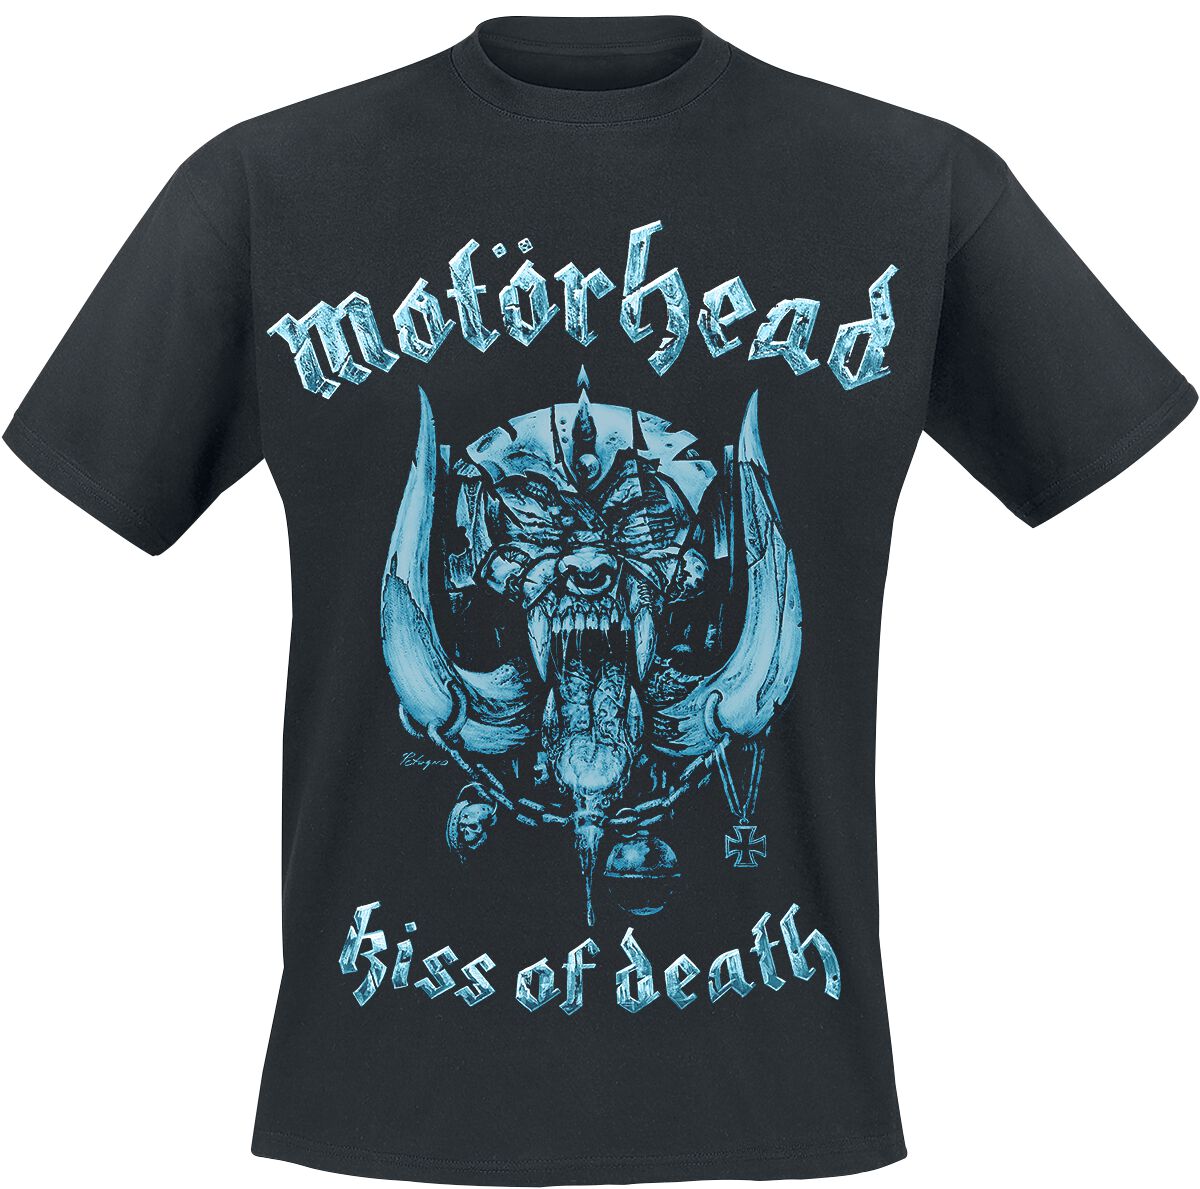 Motörhead T-Shirt - Kiss Of Death Warpig Cut Out - S bis XXL - für Männer - Größe S - schwarz  - Lizenziertes Merchandise!